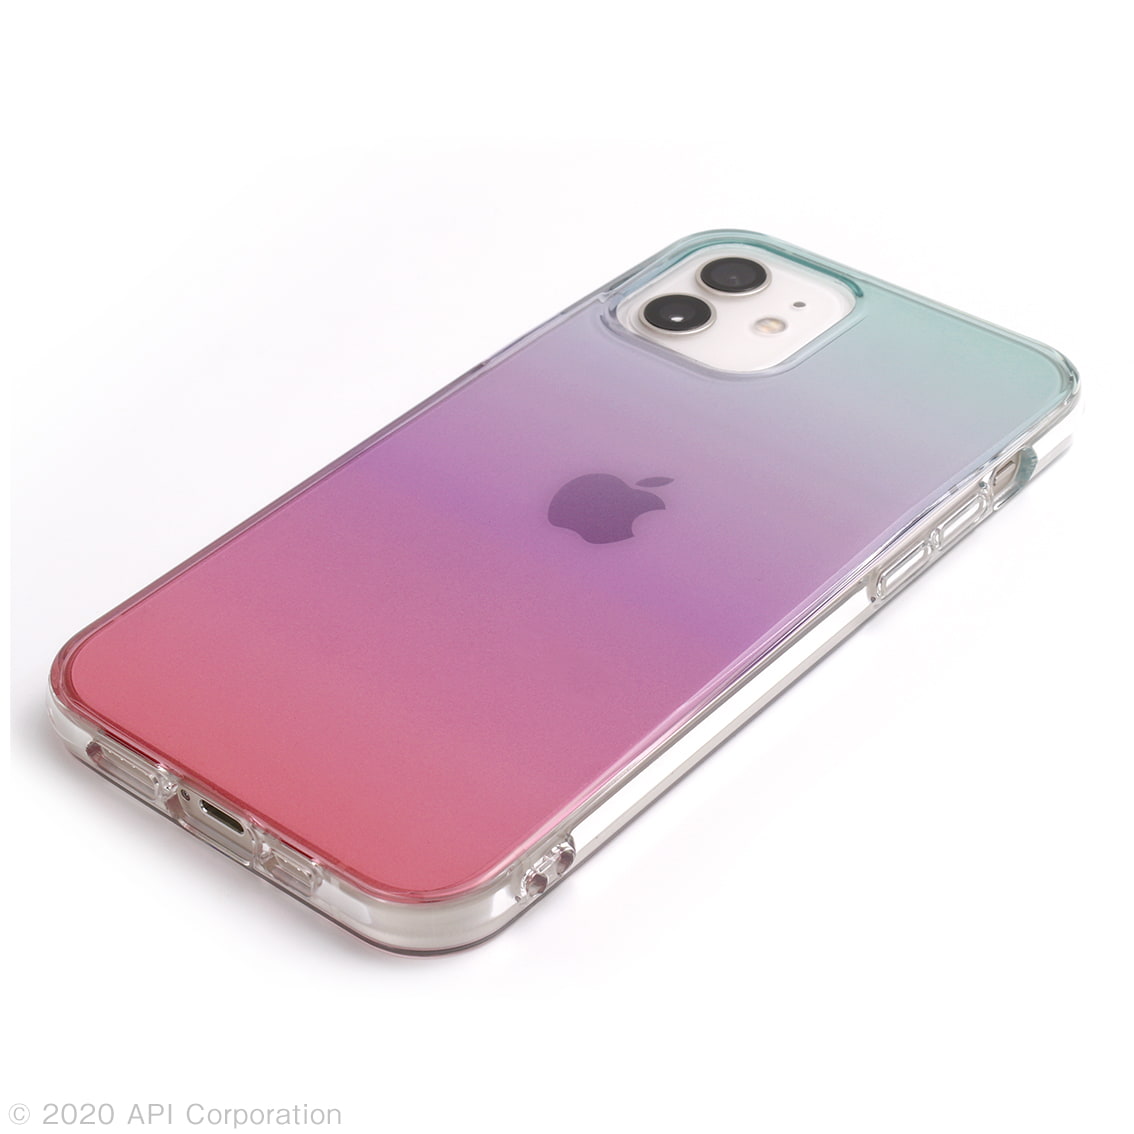 iPhone 12 mini  Carat クリアケース EYLE